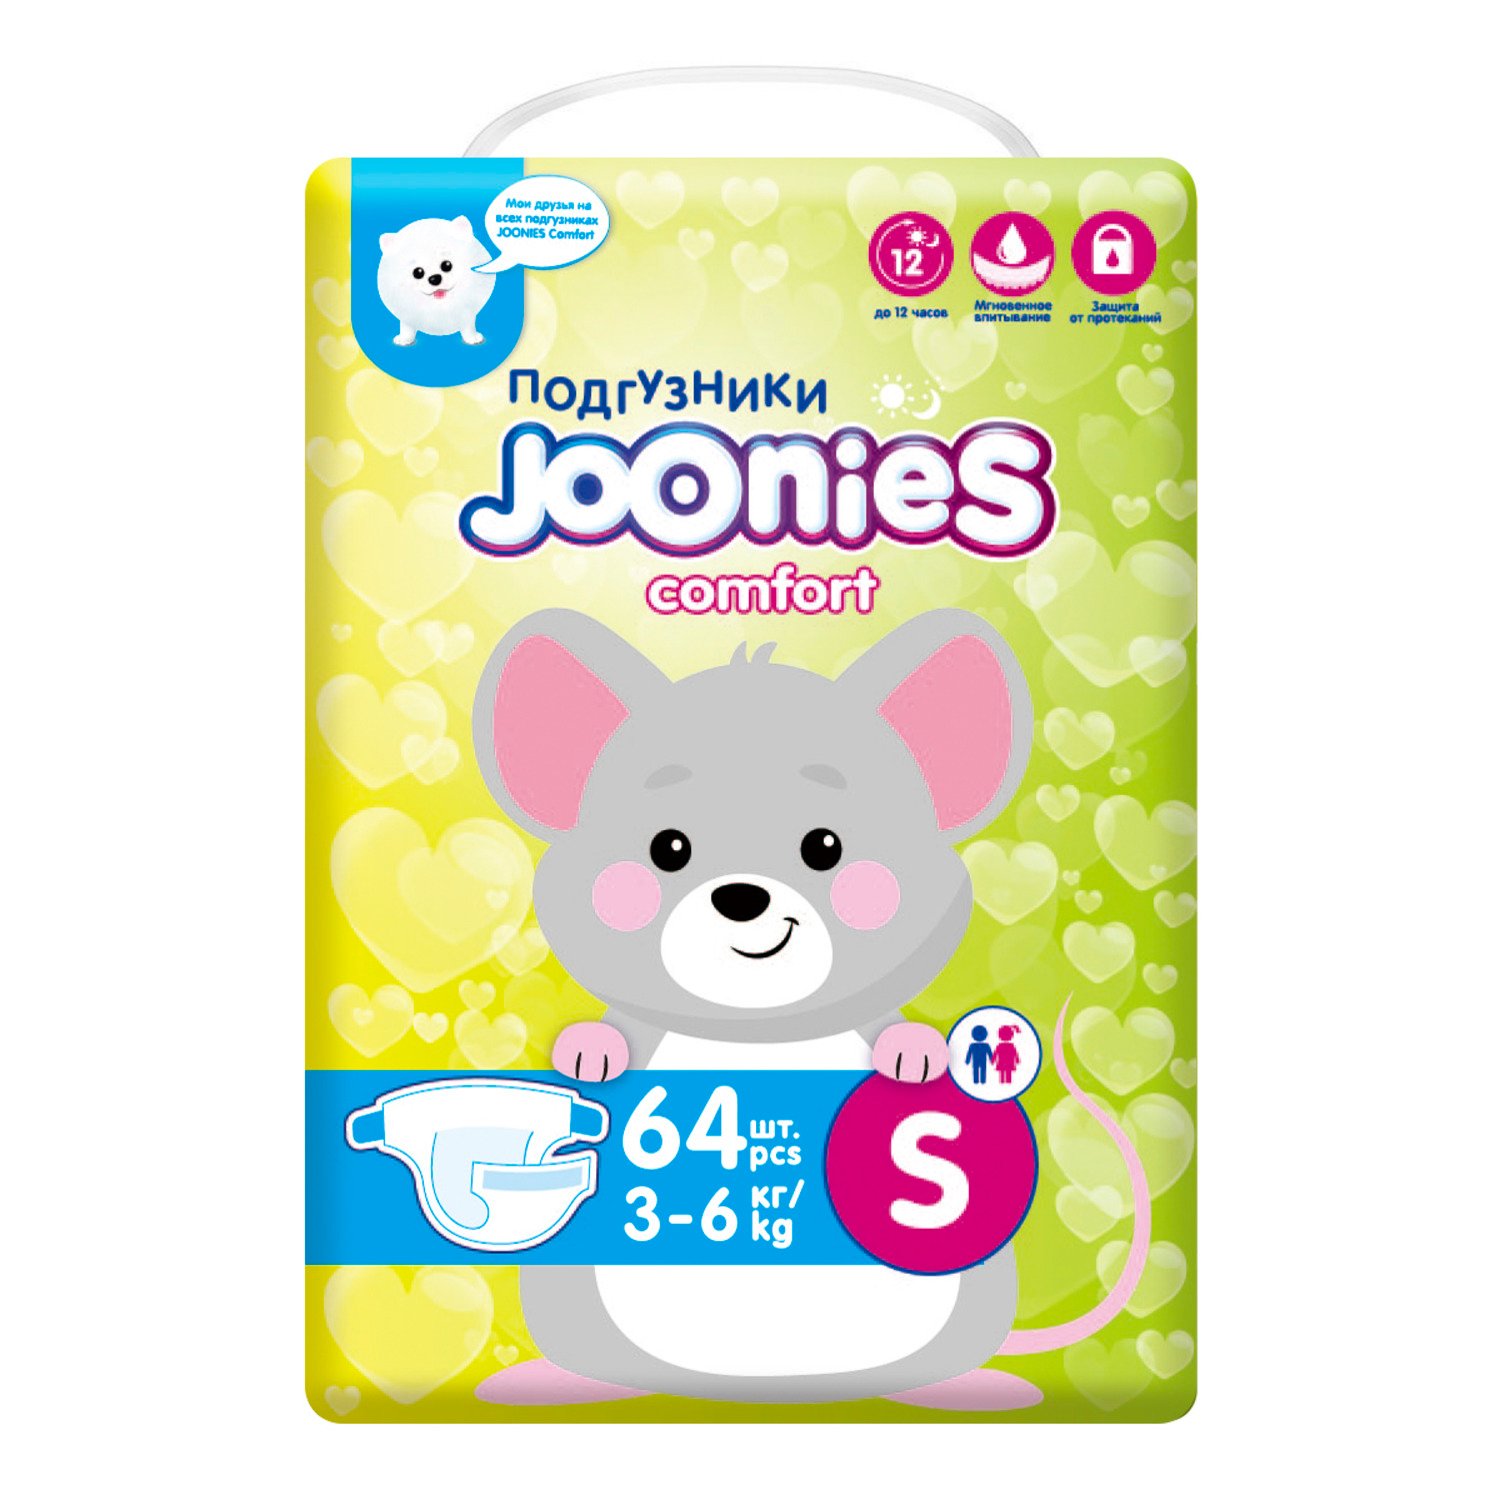 Joonies comfort подгузники детские размер S (3-6 кг) N 64